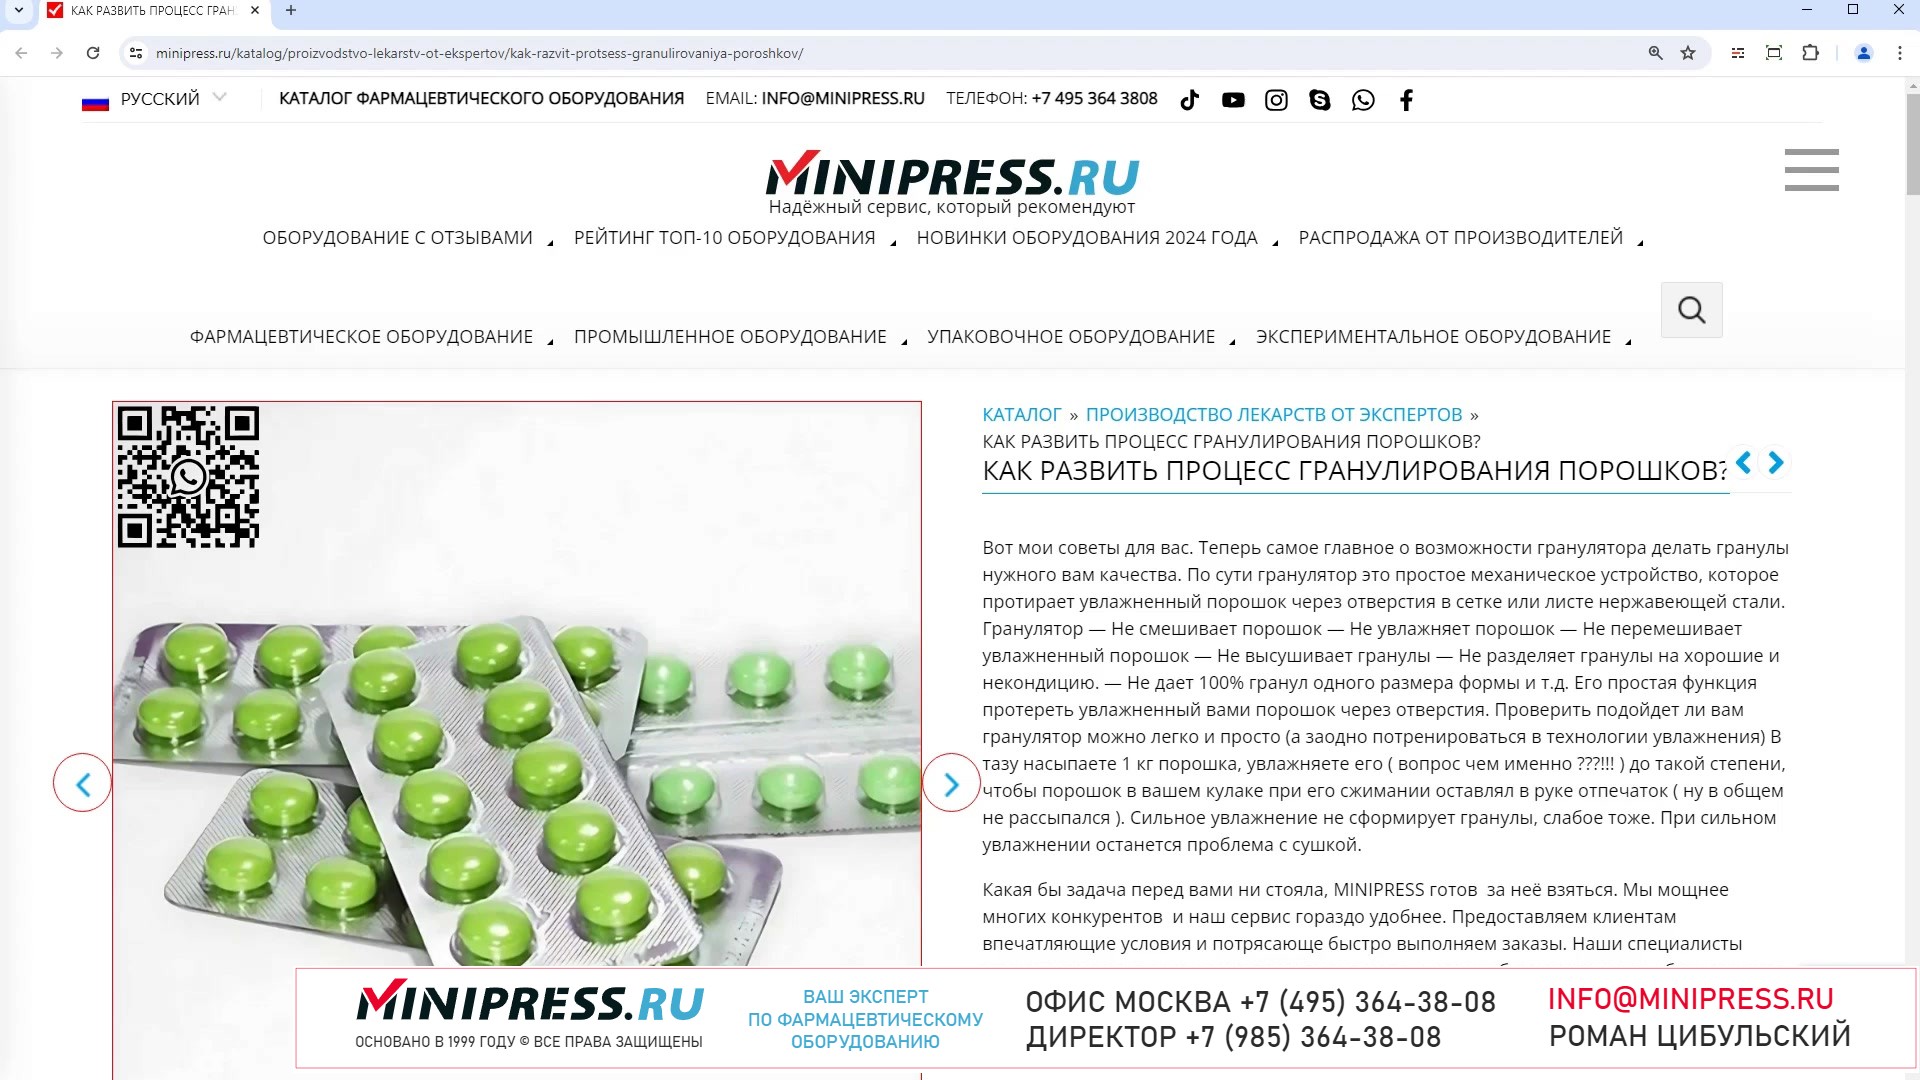 Minipress.ru Как развить процесс гранулирования порошков